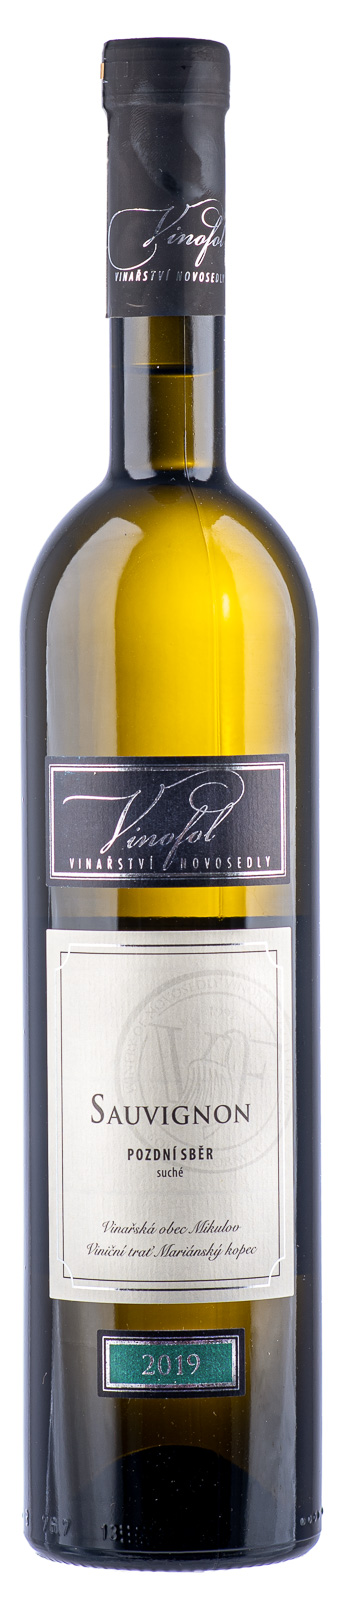 Sauvignon Blanc wino morawskie